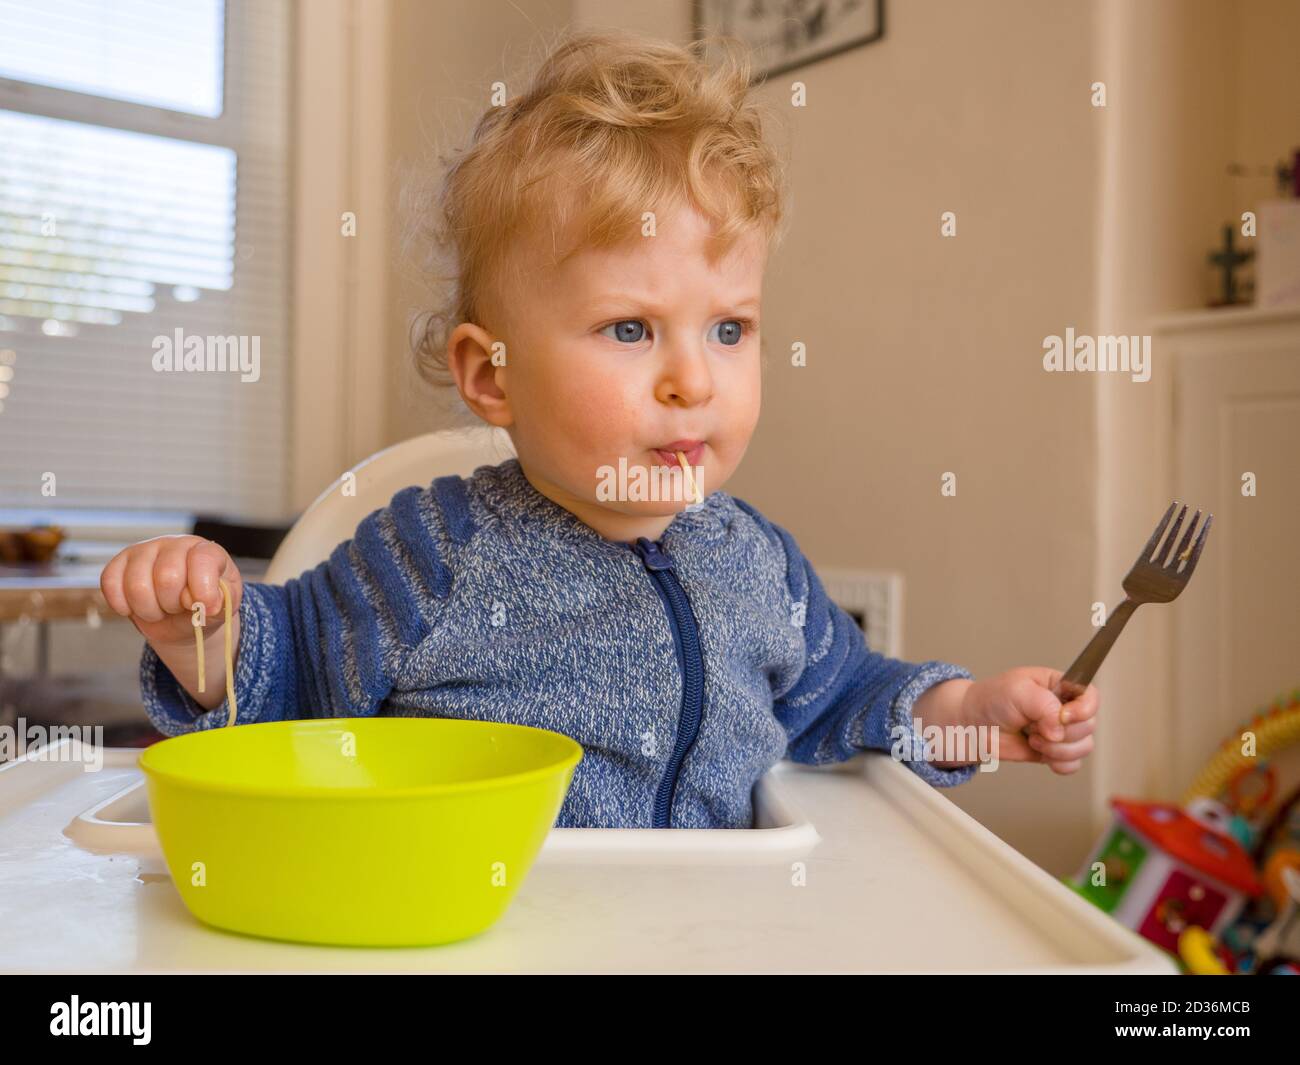 Ein Jahr alter kleiner Junge, der Spaghetti mit Besteck isst Zu Hause Stockfoto